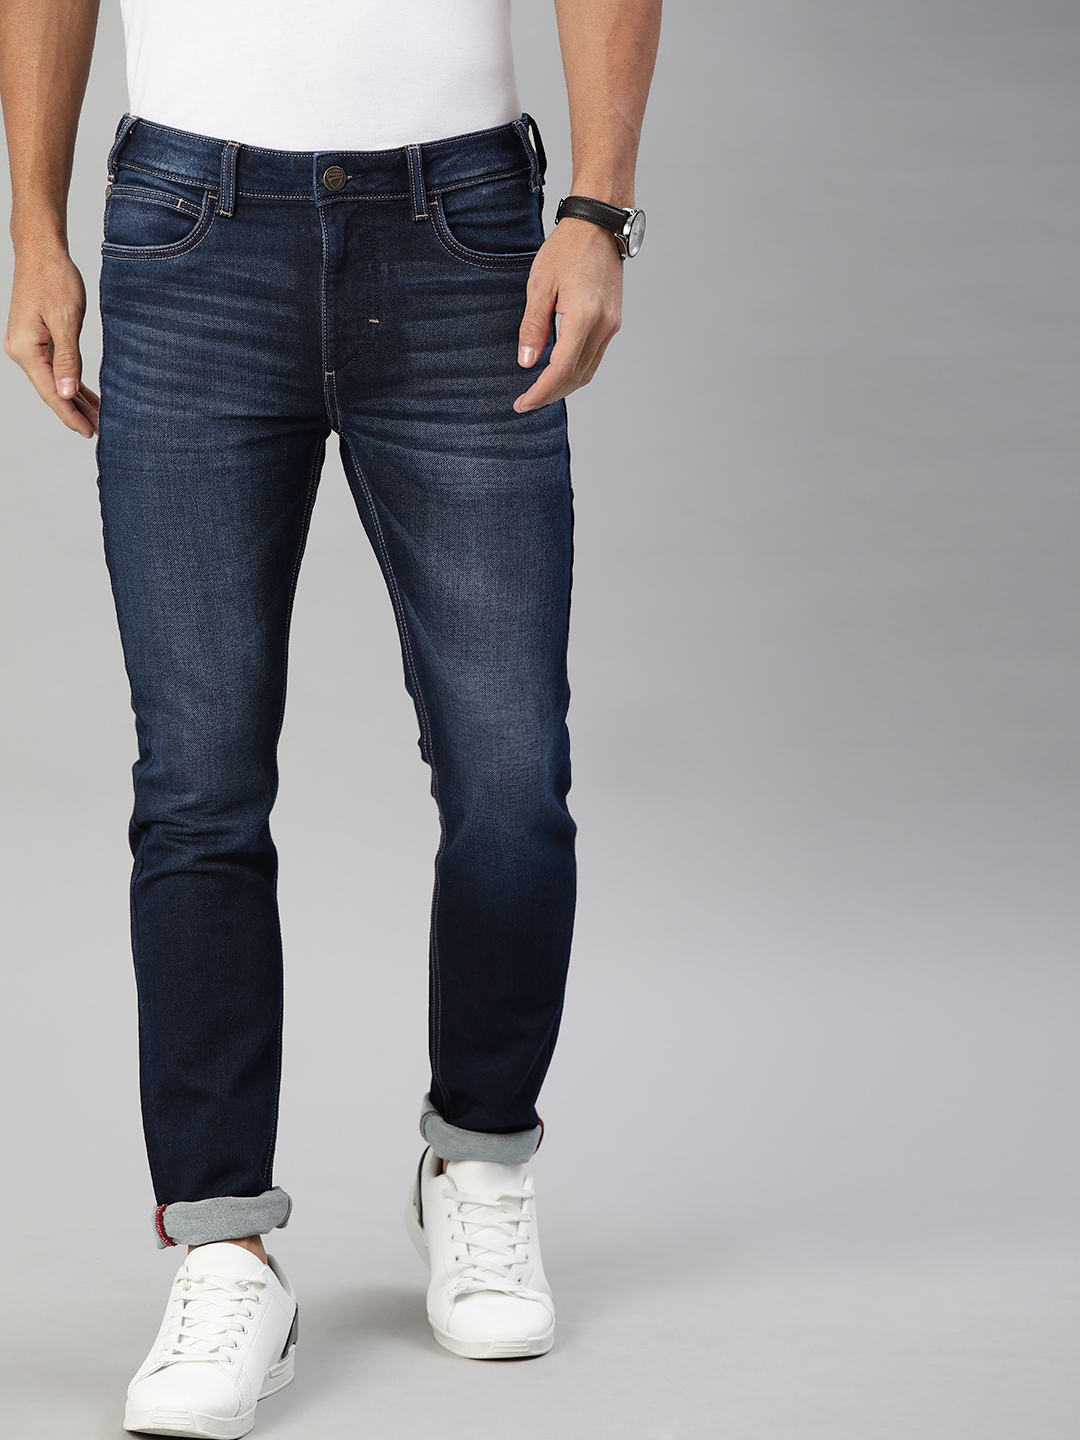 Buy Ducati Men Navy Blue Skinny Fit Mid Rise Clean Look Jeans - Jeans ...